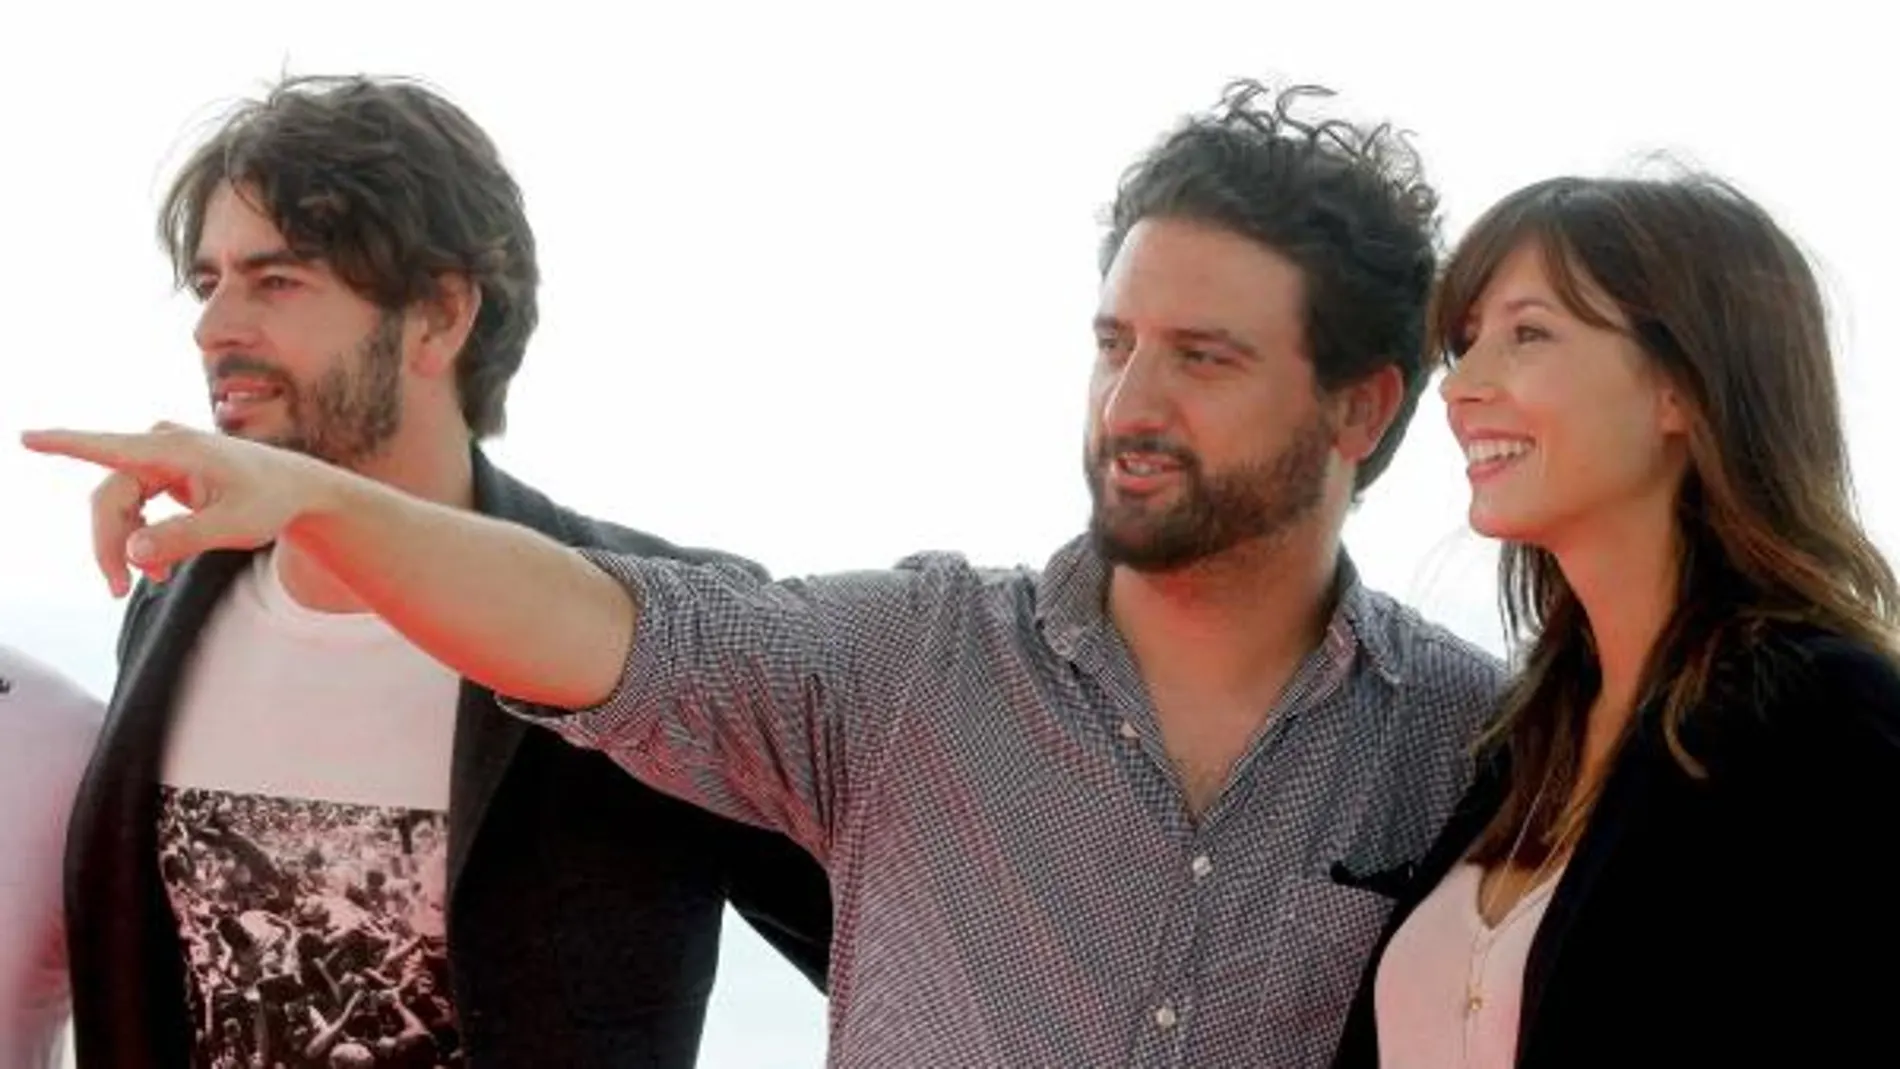 El director Eugenio Mira (c), junto a los actores Eduardo Noriega (i) y Bárbara Goenaga, durante la presentación de su película "Agnosia"en el marco del Festival de Cine Fantástico de Sitges